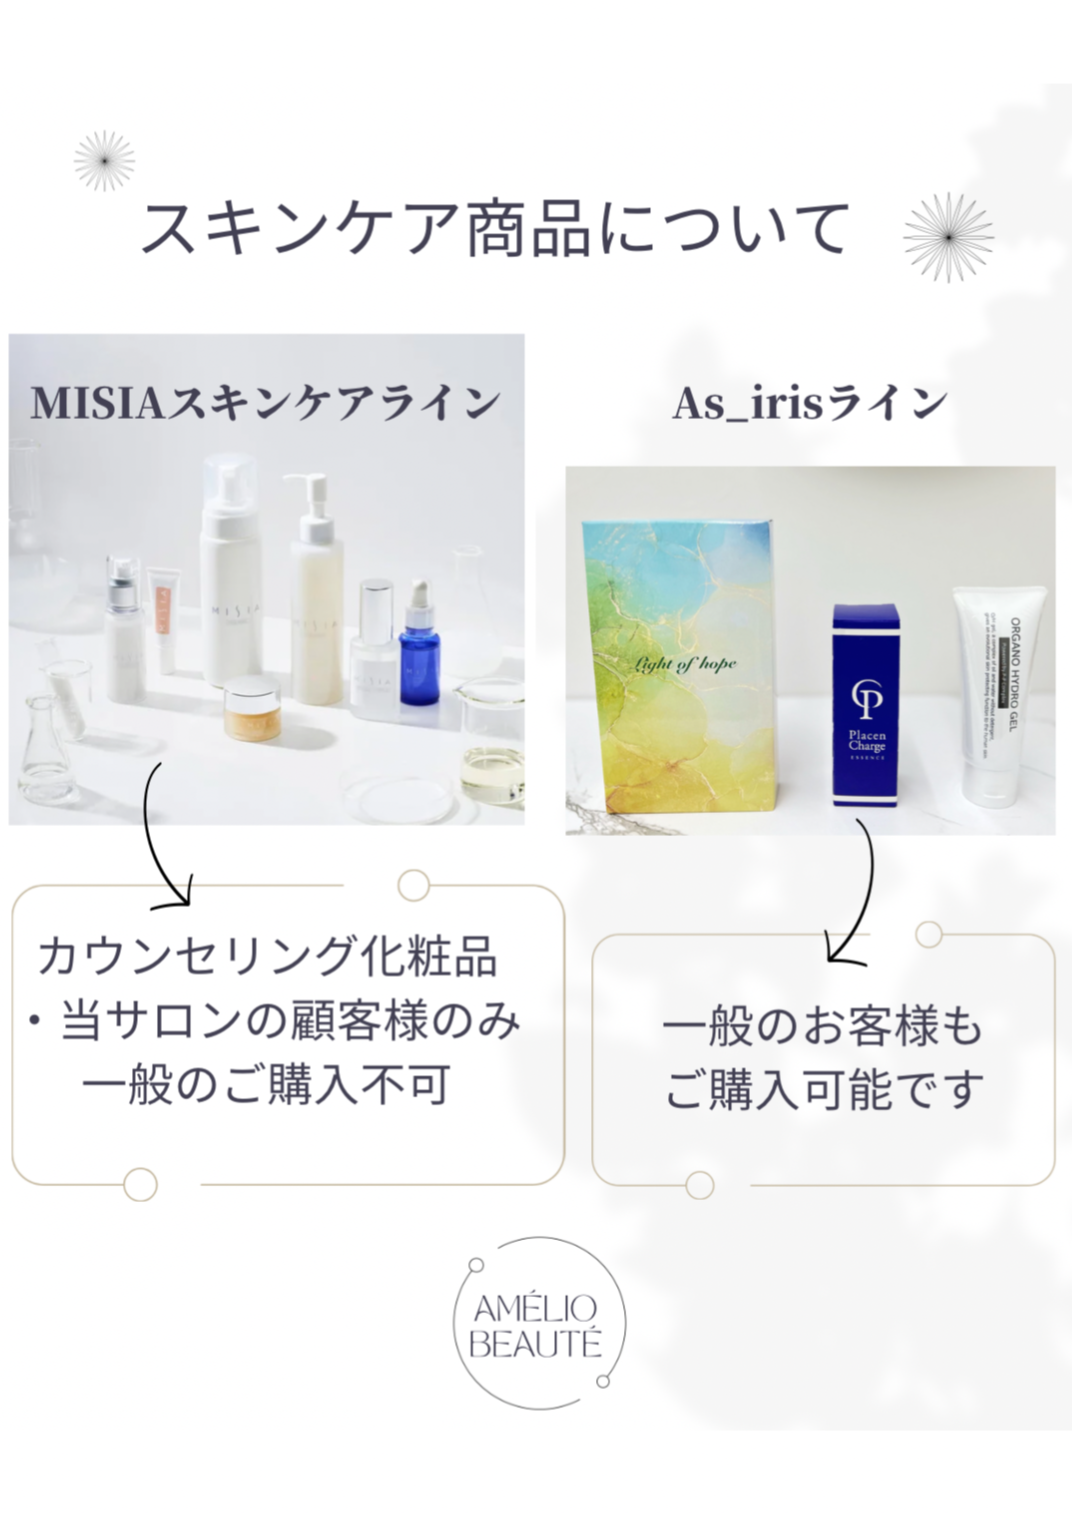 毛穴専門サロン ミシア 化粧品 - 化粧水/ローション